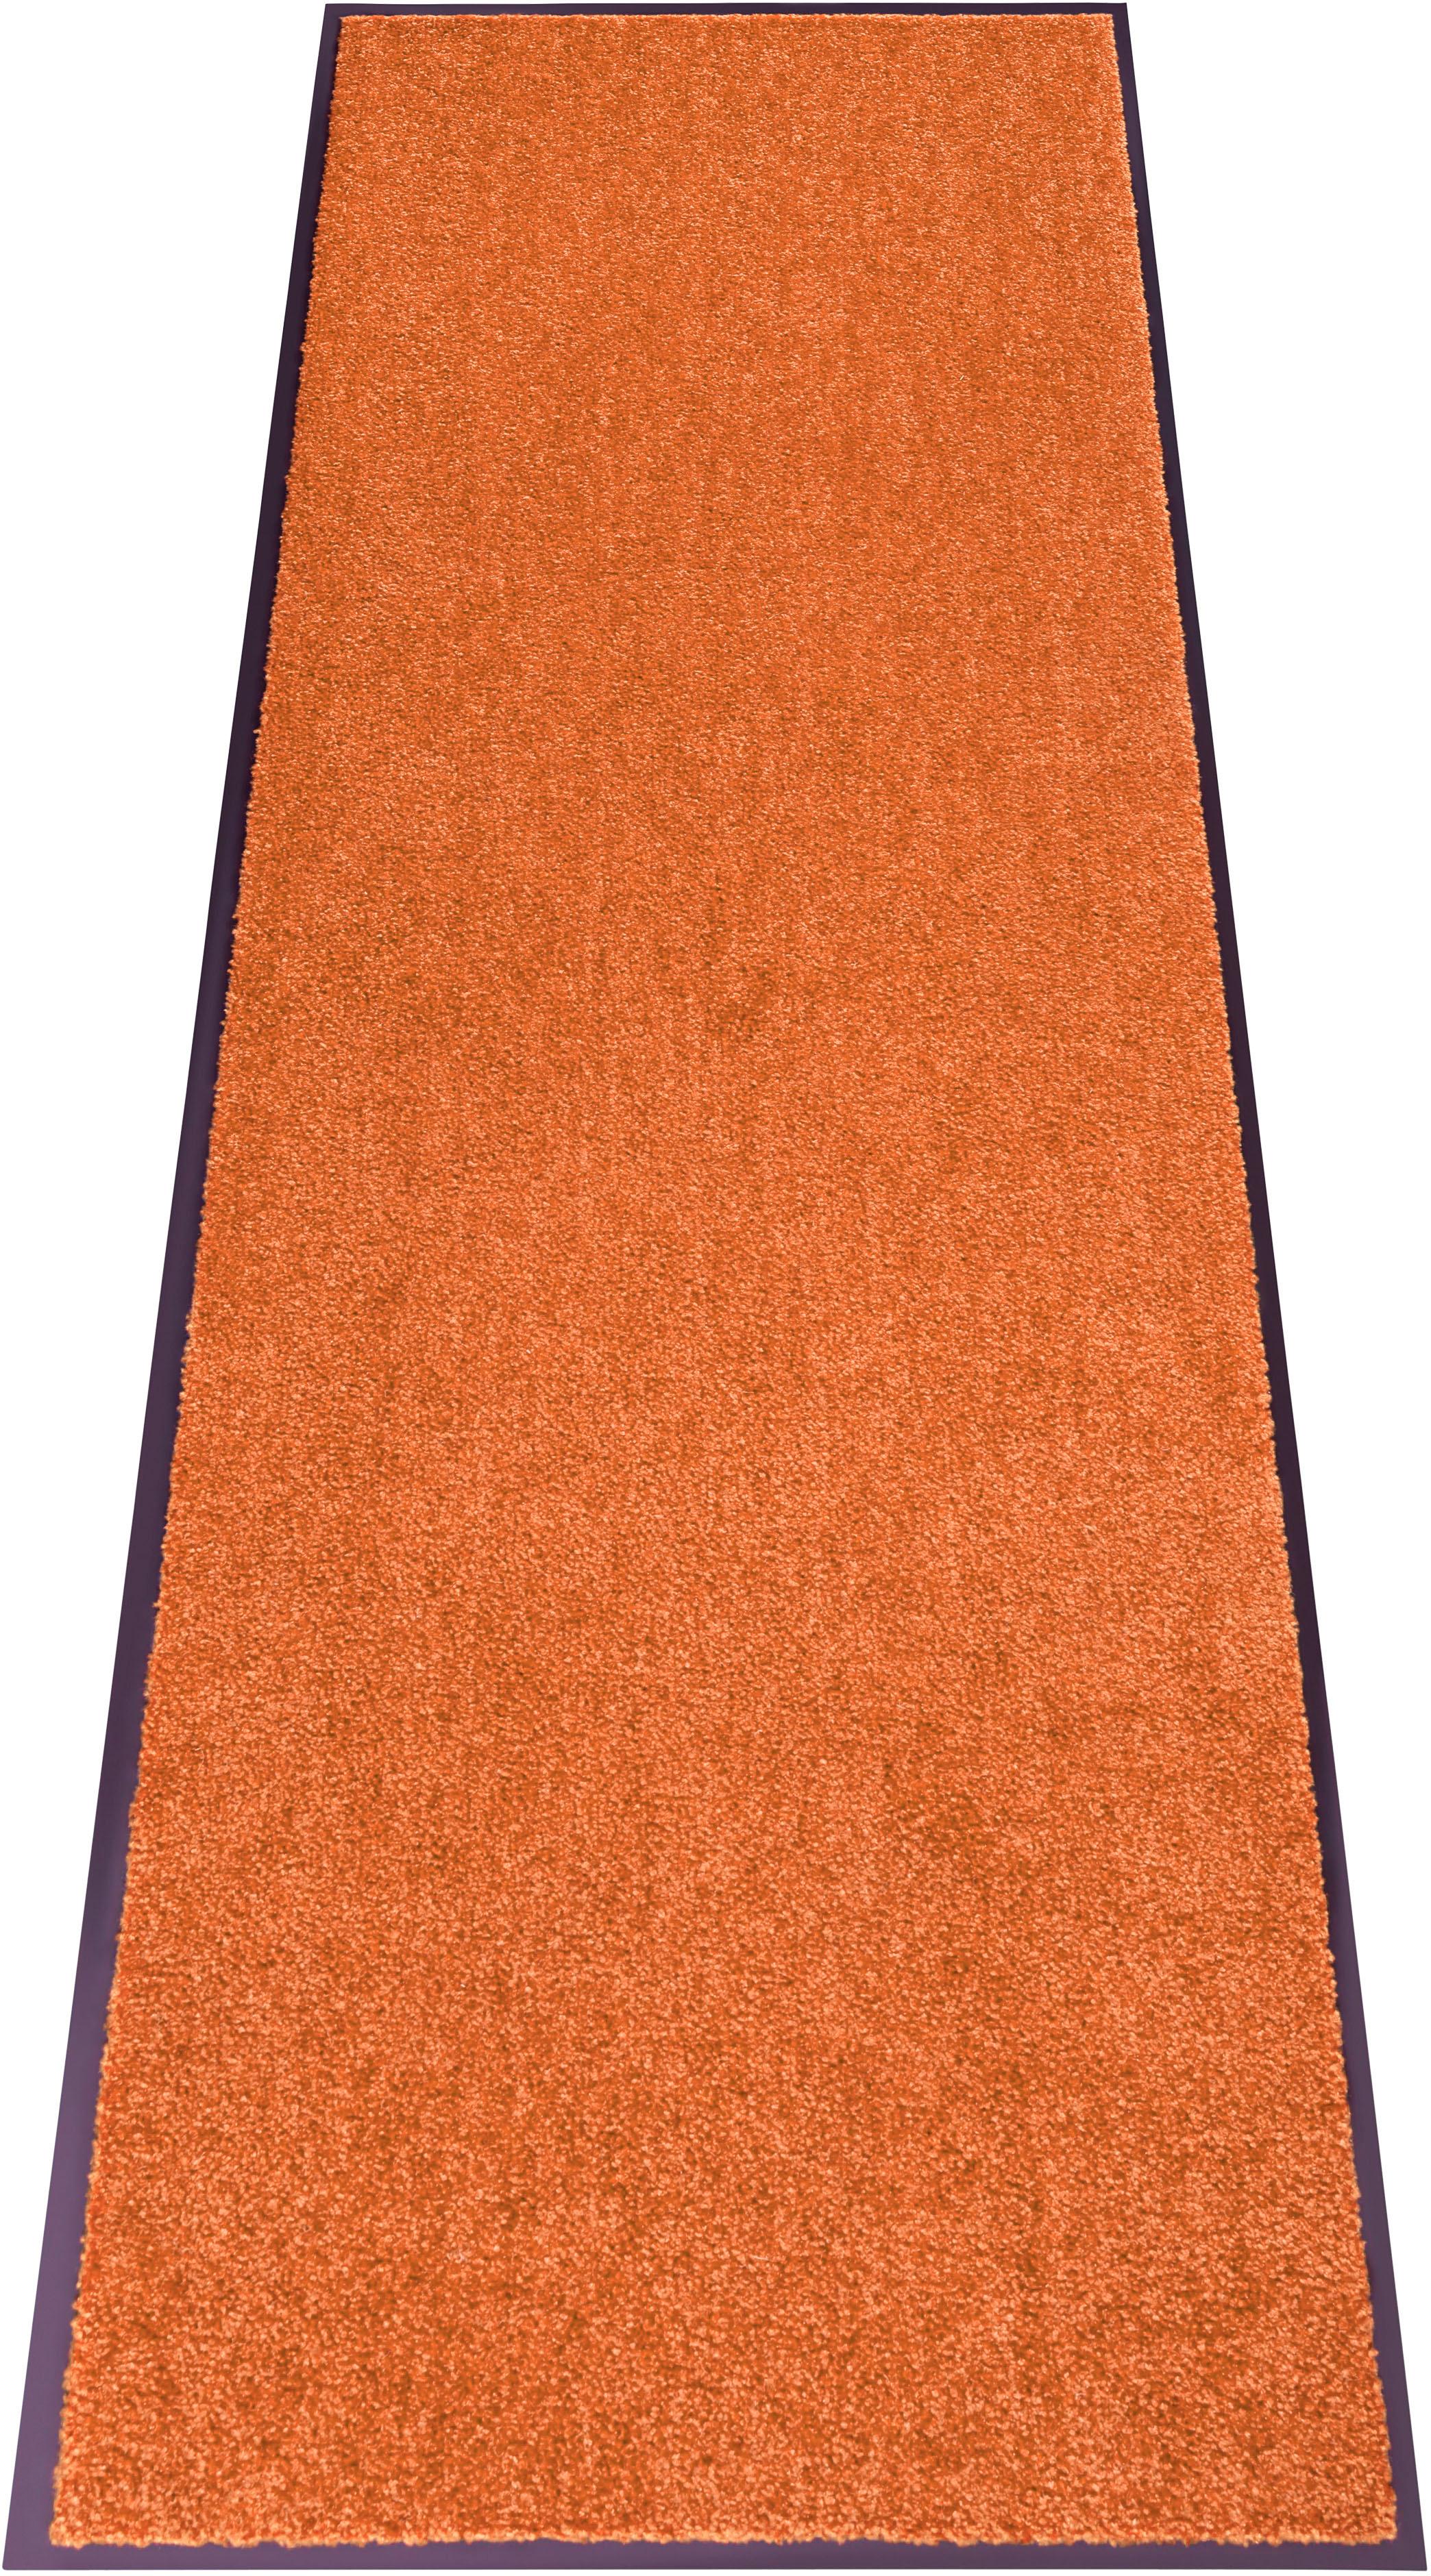 Teppiche in Orange jetzt günstig kaufen ▻ ▻ UNIVERSAL